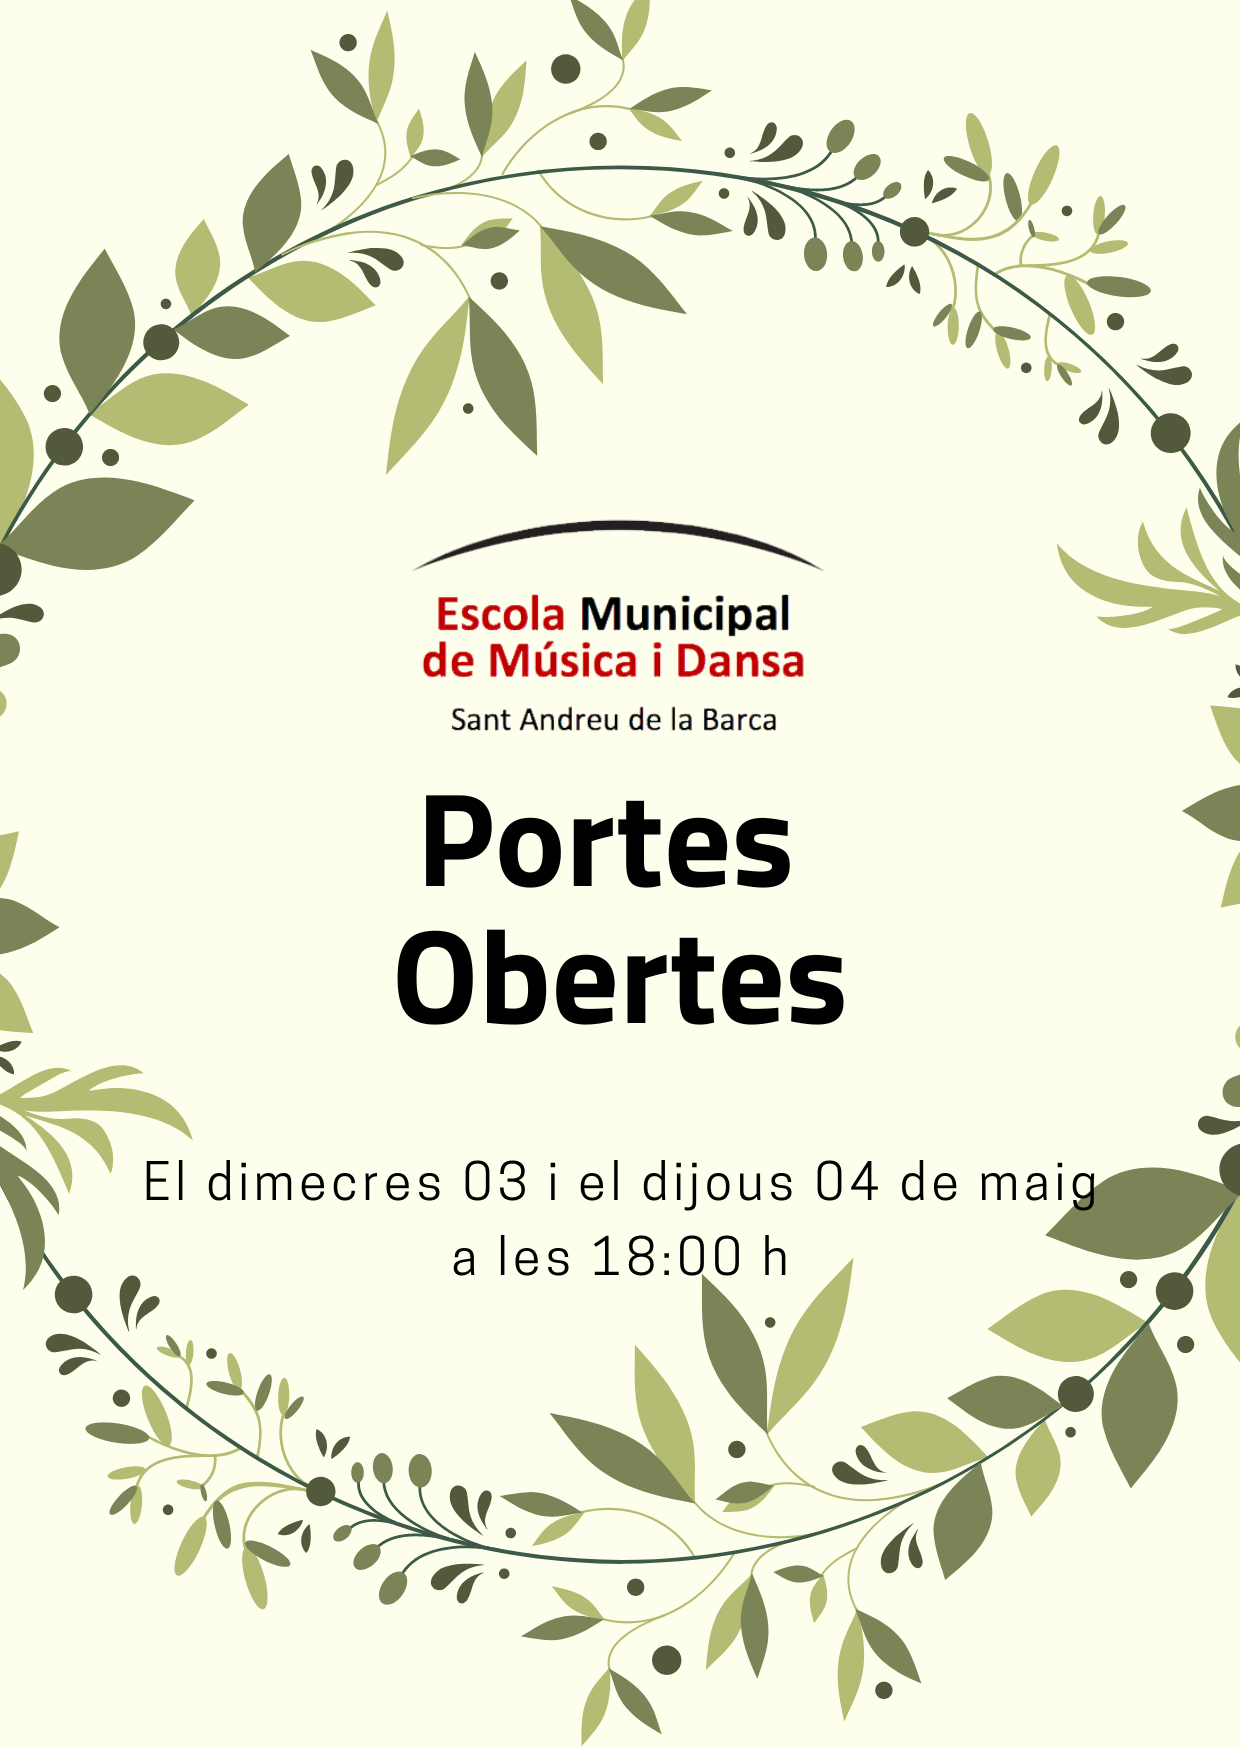 PORTES OBERTES 03 i 04 DE MAIG